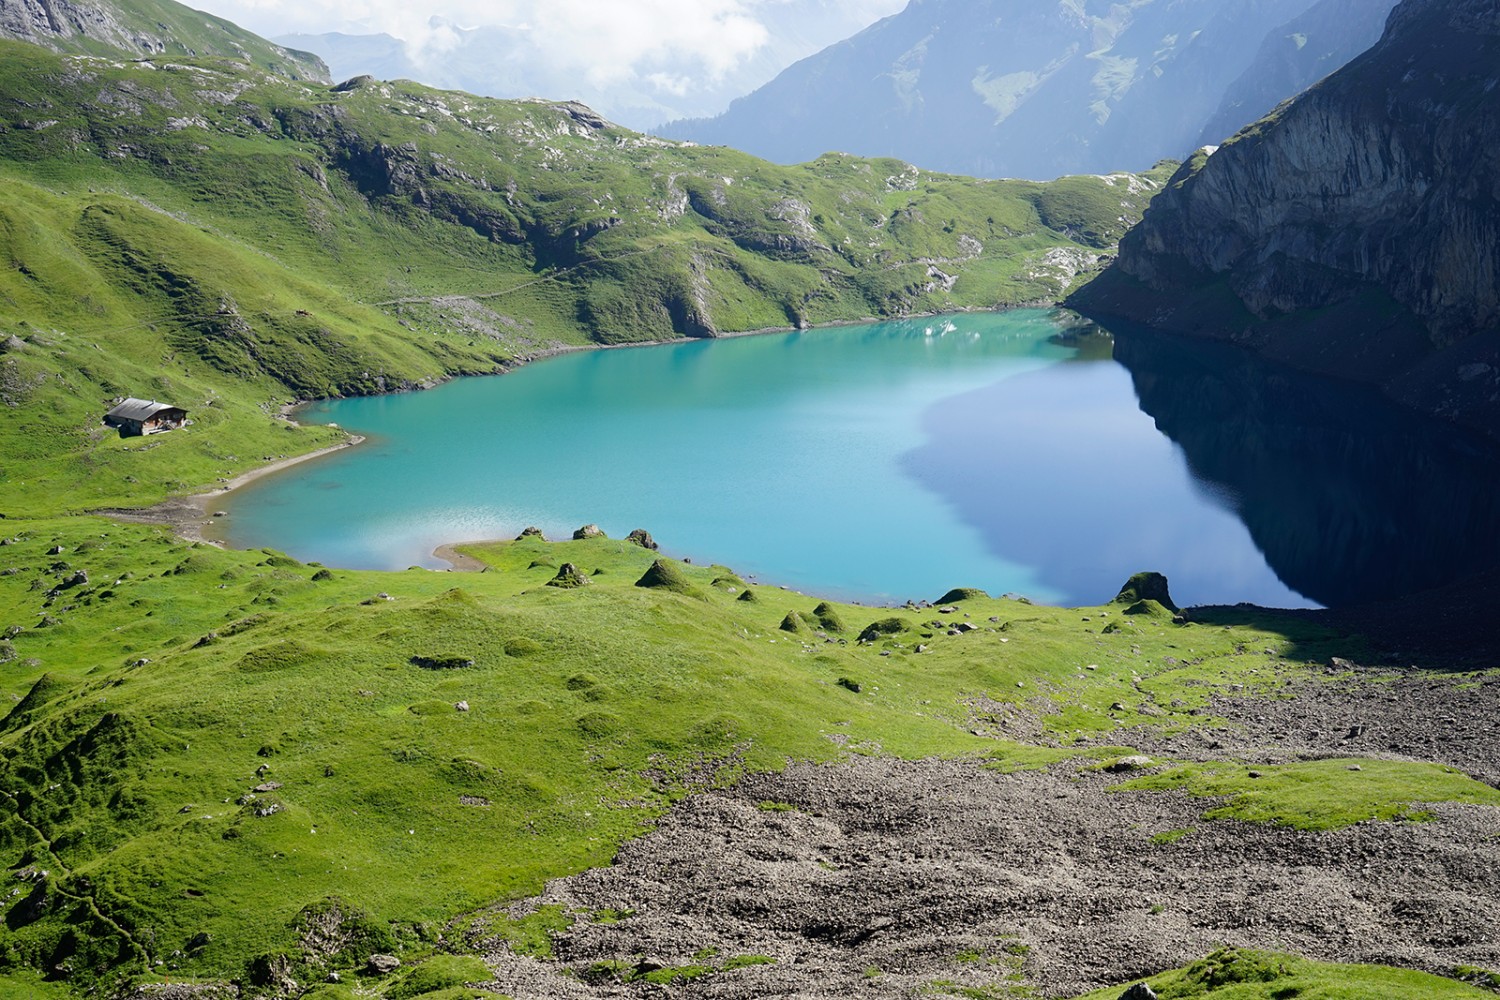 Le lac d’Iffigsee, véritable bijou niché entre les pâturages et les parois rocheuses. Photo: Fredy Joss